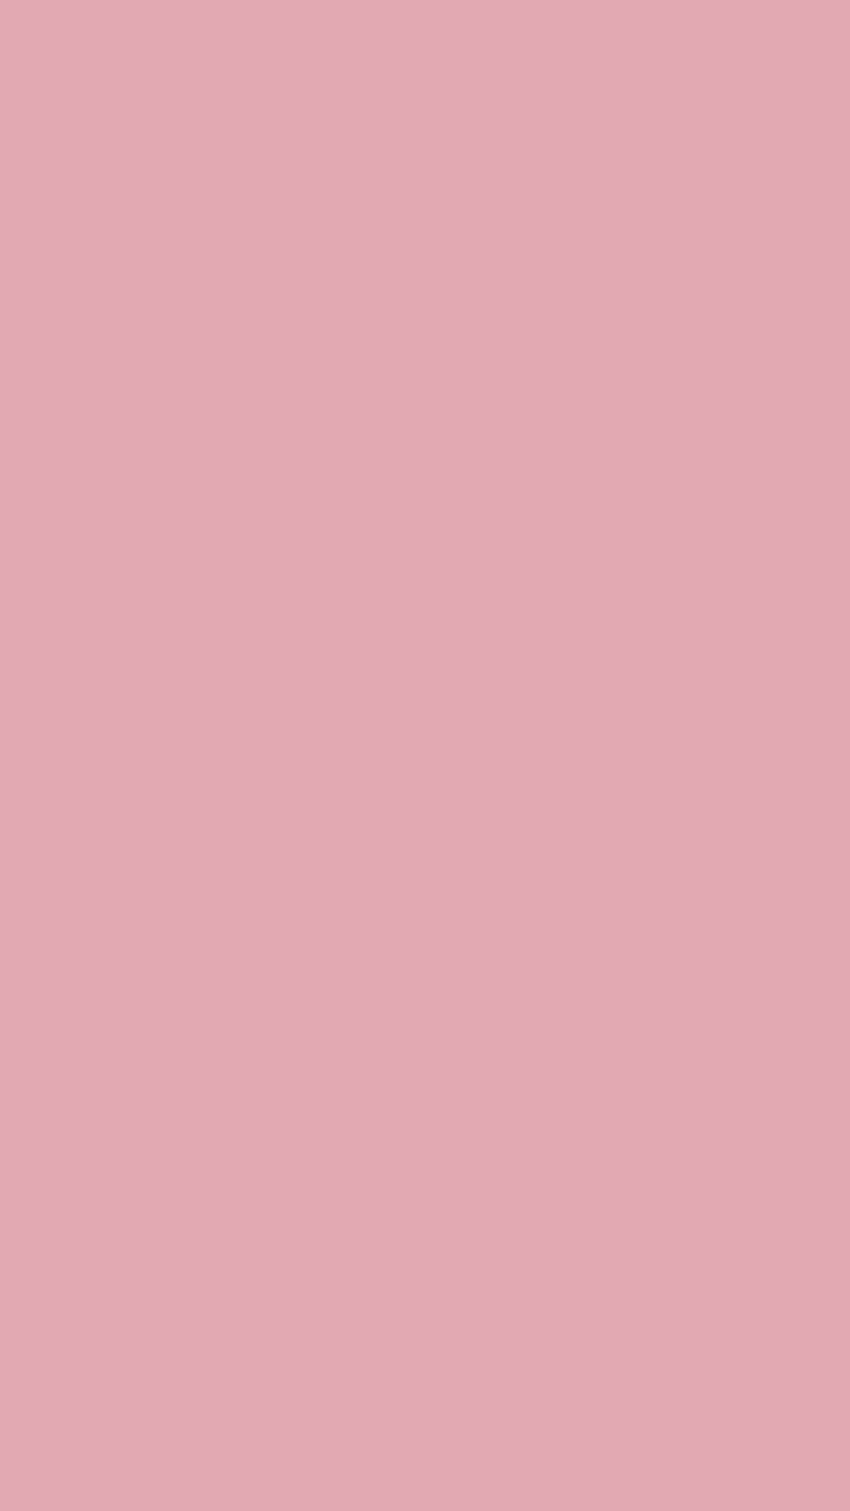 Nền màu hồng (Pink background): Màu hồng là màu của sự dịu dàng và tình yêu. Nếu bạn là fan hâm mộ của màu hồng, hãy xem những hình nền tuyệt đẹp với nền màu hồng nhẹ nhàng để làm nền cho màn hình của bạn. Chúc bạn có thể tìm được bức tranh yêu thích của riêng mình.